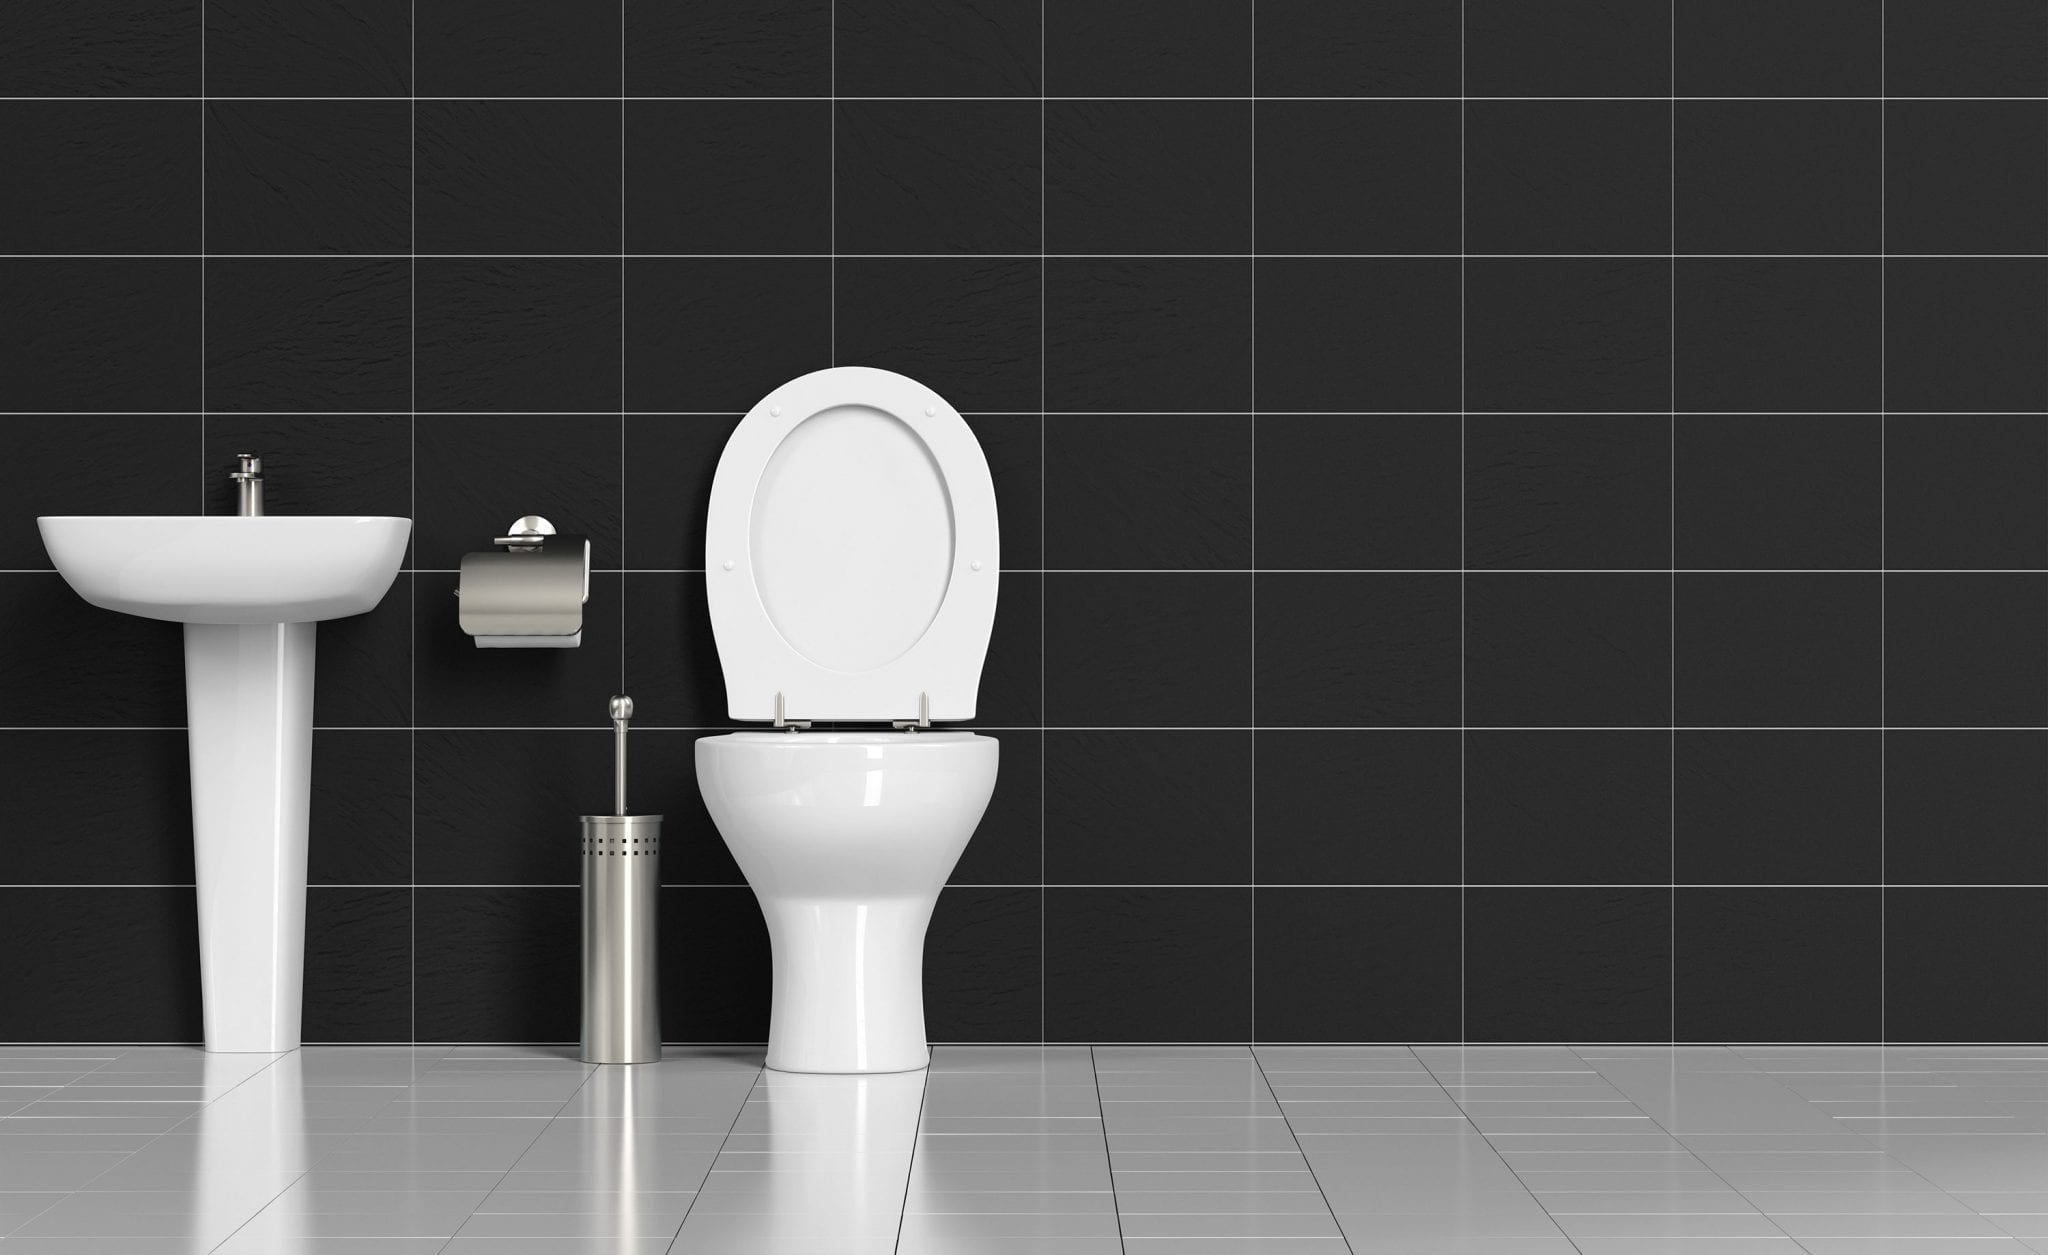 toilet-and-vanity-against-black-tiles